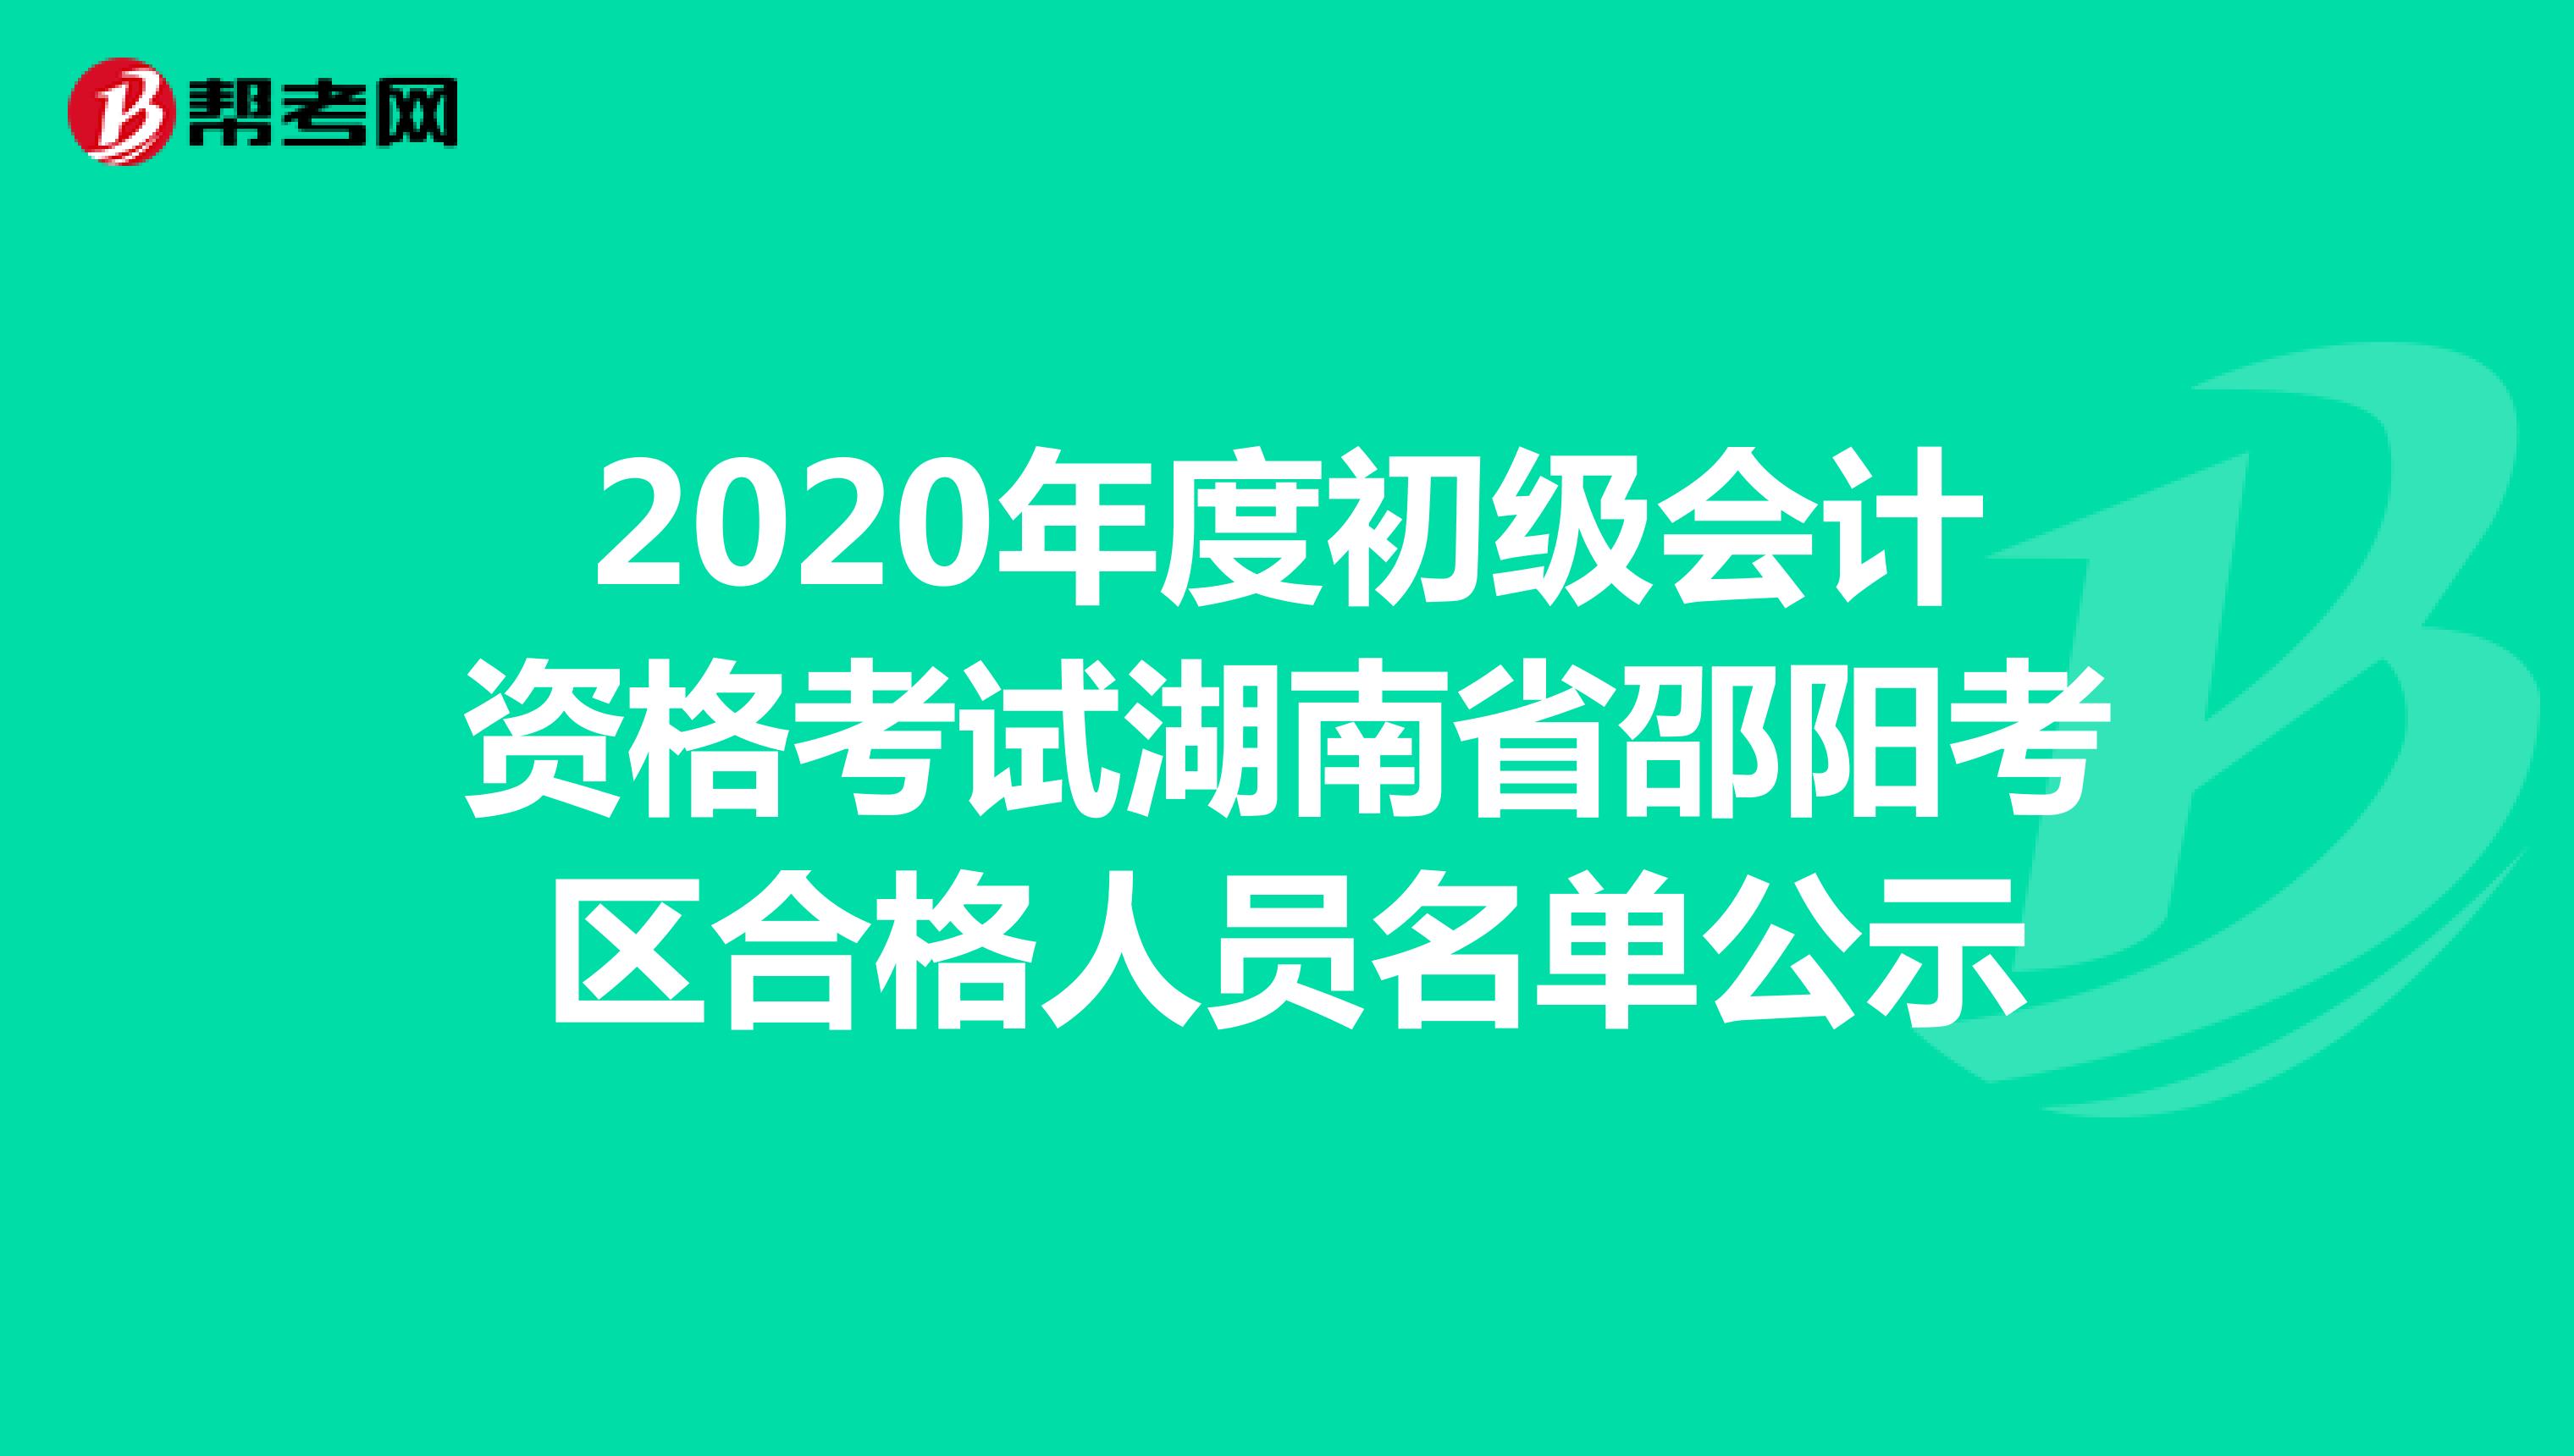 2020年度初级会计资格考试湖南省邵阳考区合格人员名单公示 